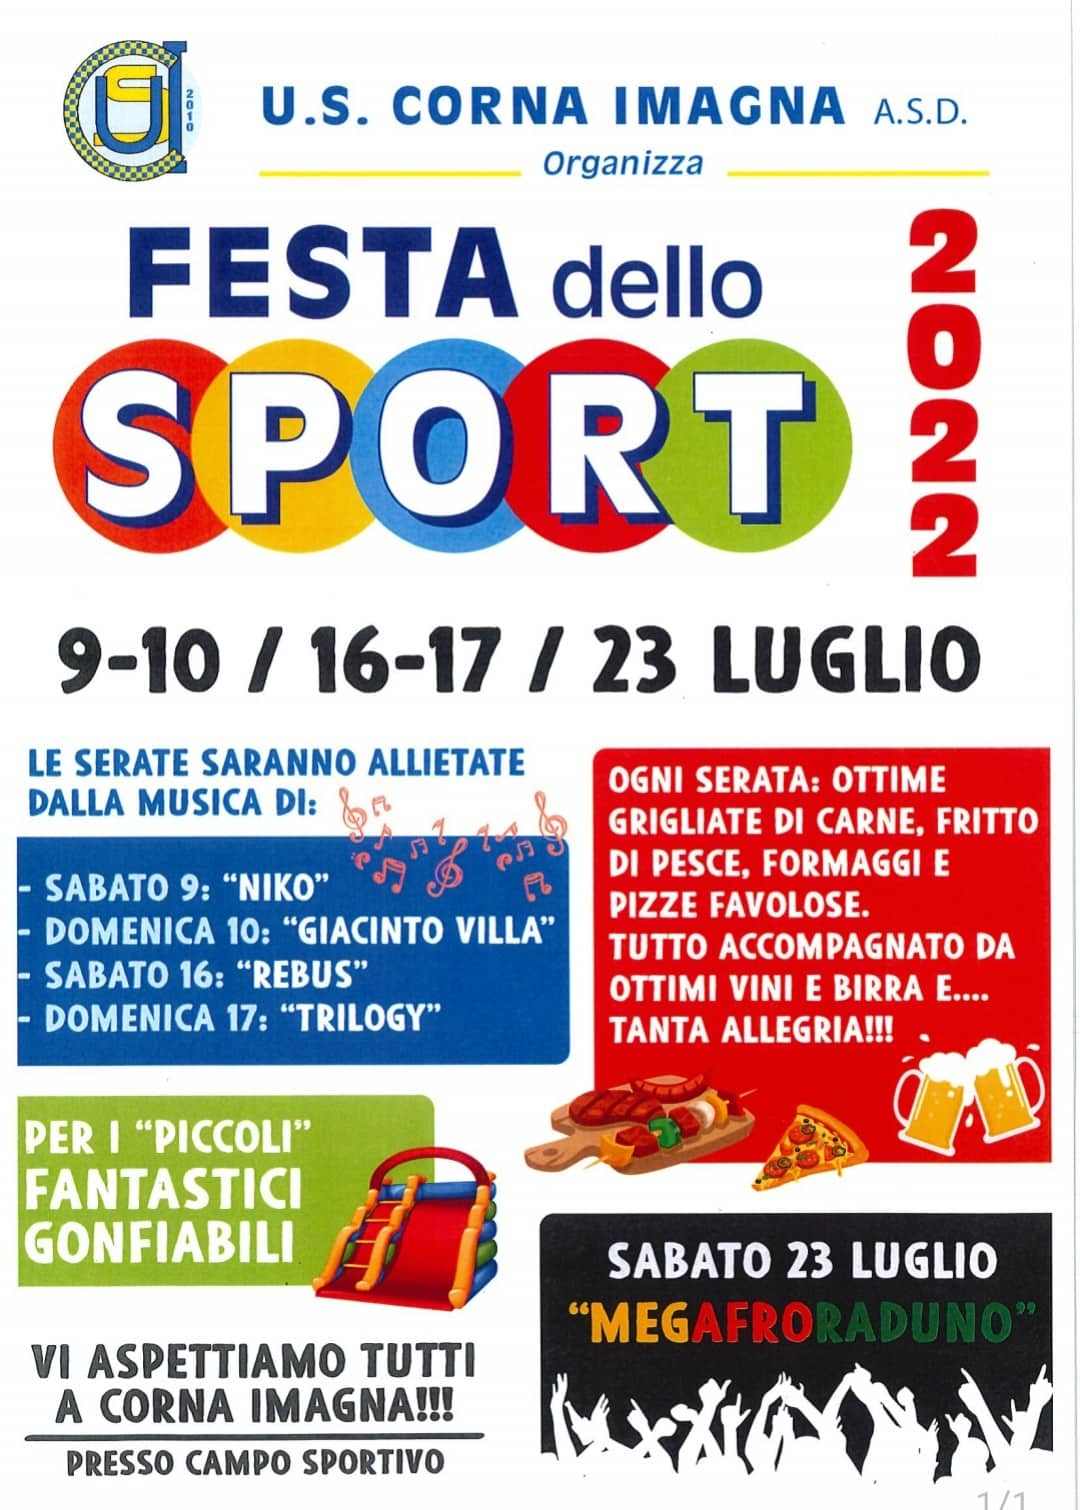 Corna Imagna (BG)
"Festa dello Sport" 
9-10 • 16-17 e 23 Luglio 2022